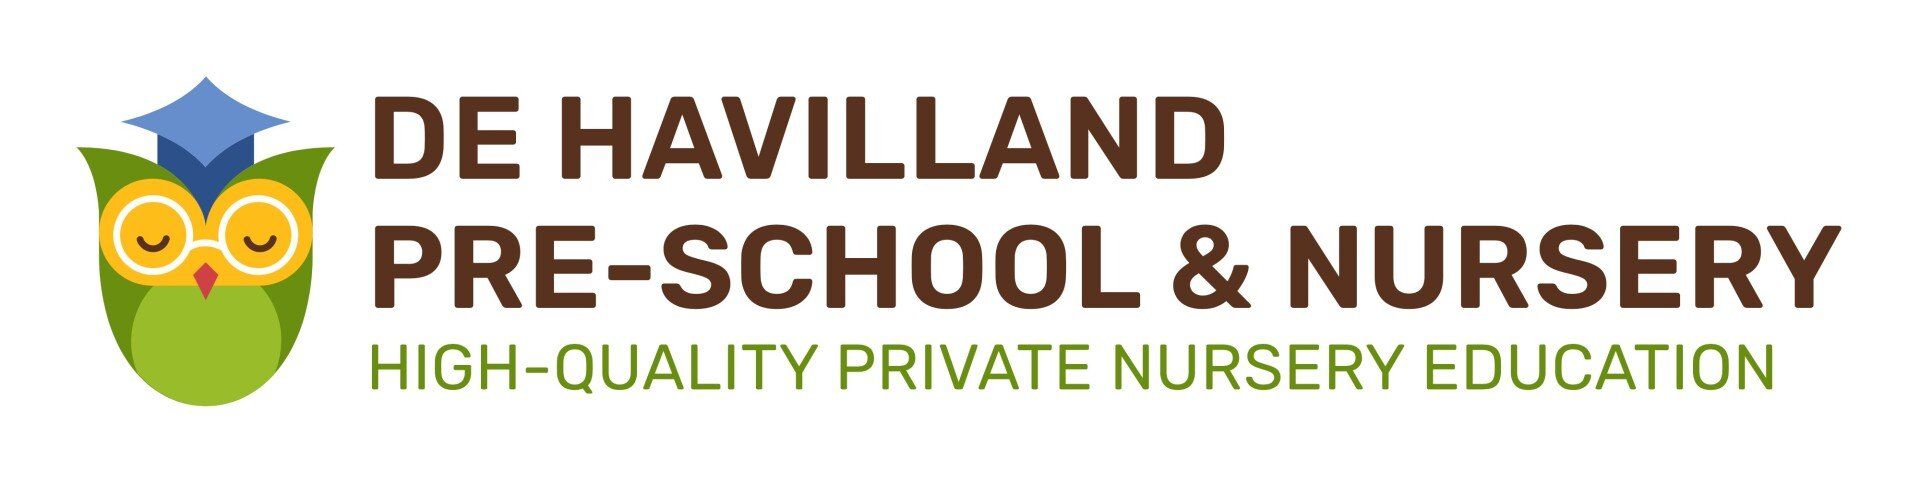 De Havilland Pre-School & Nursery Logo - Home